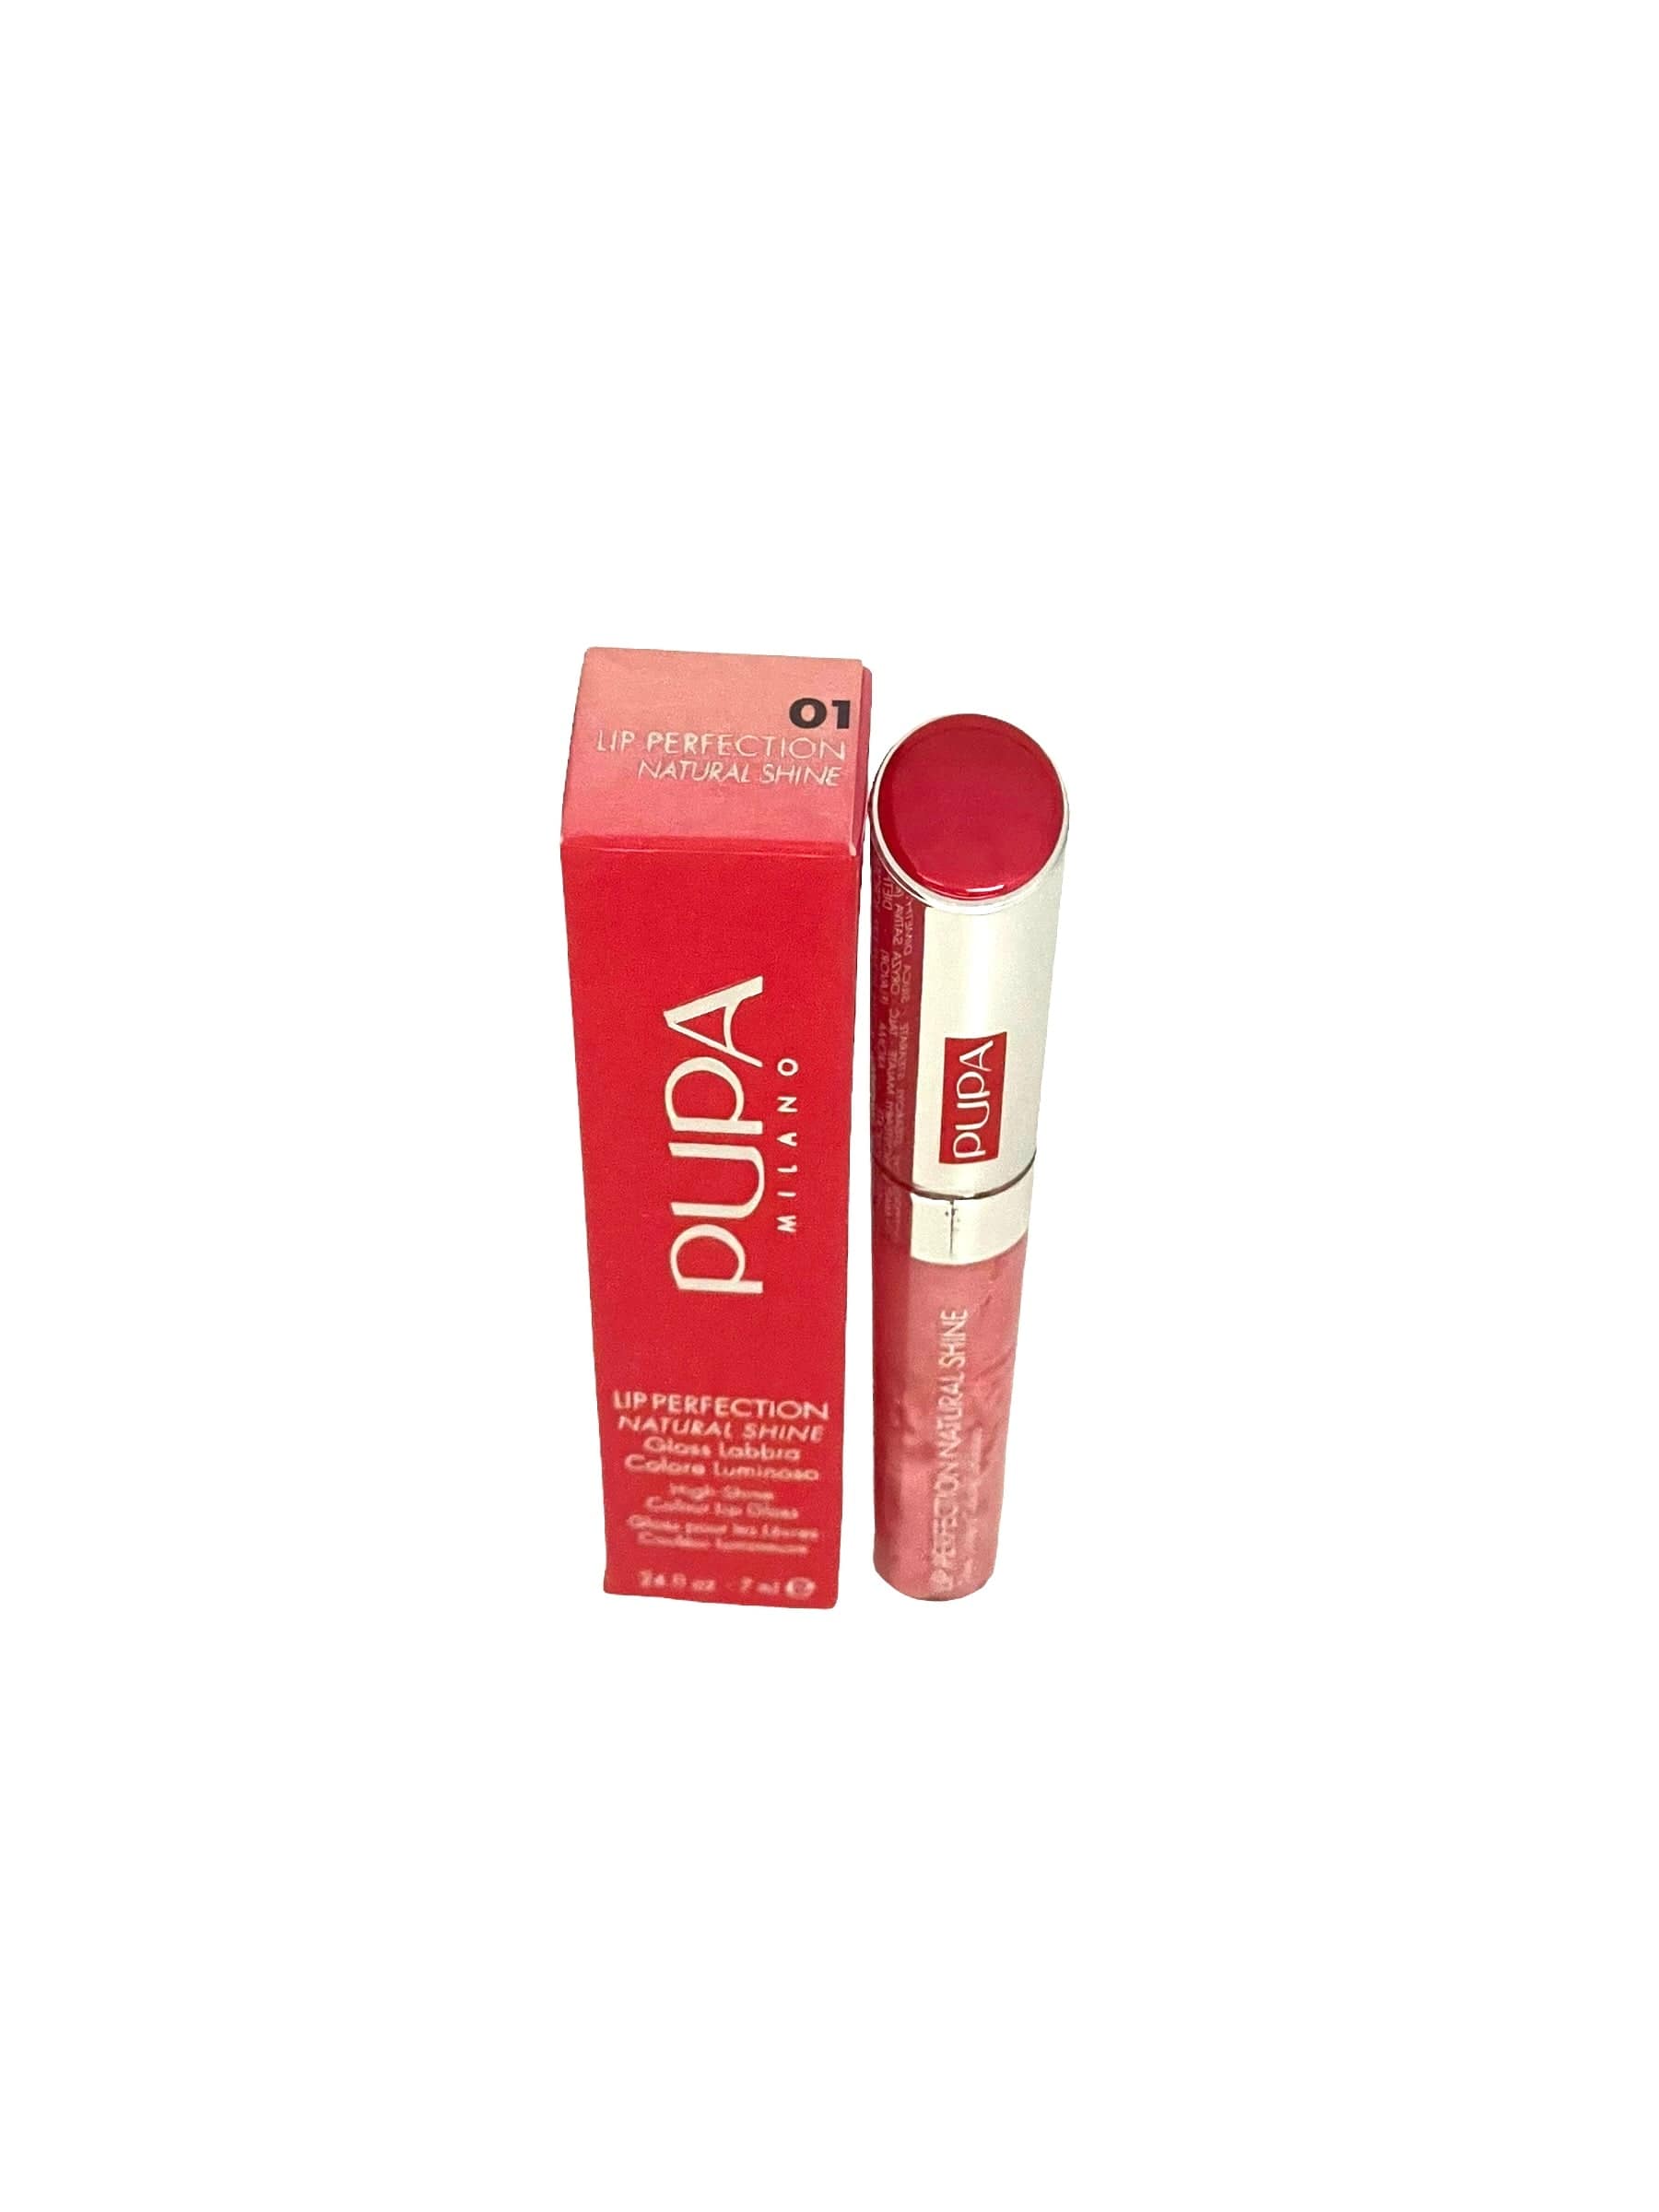 Pupa Milano Lip Gloss Perfection Natural Shine Diamond Pink #01 Makeup